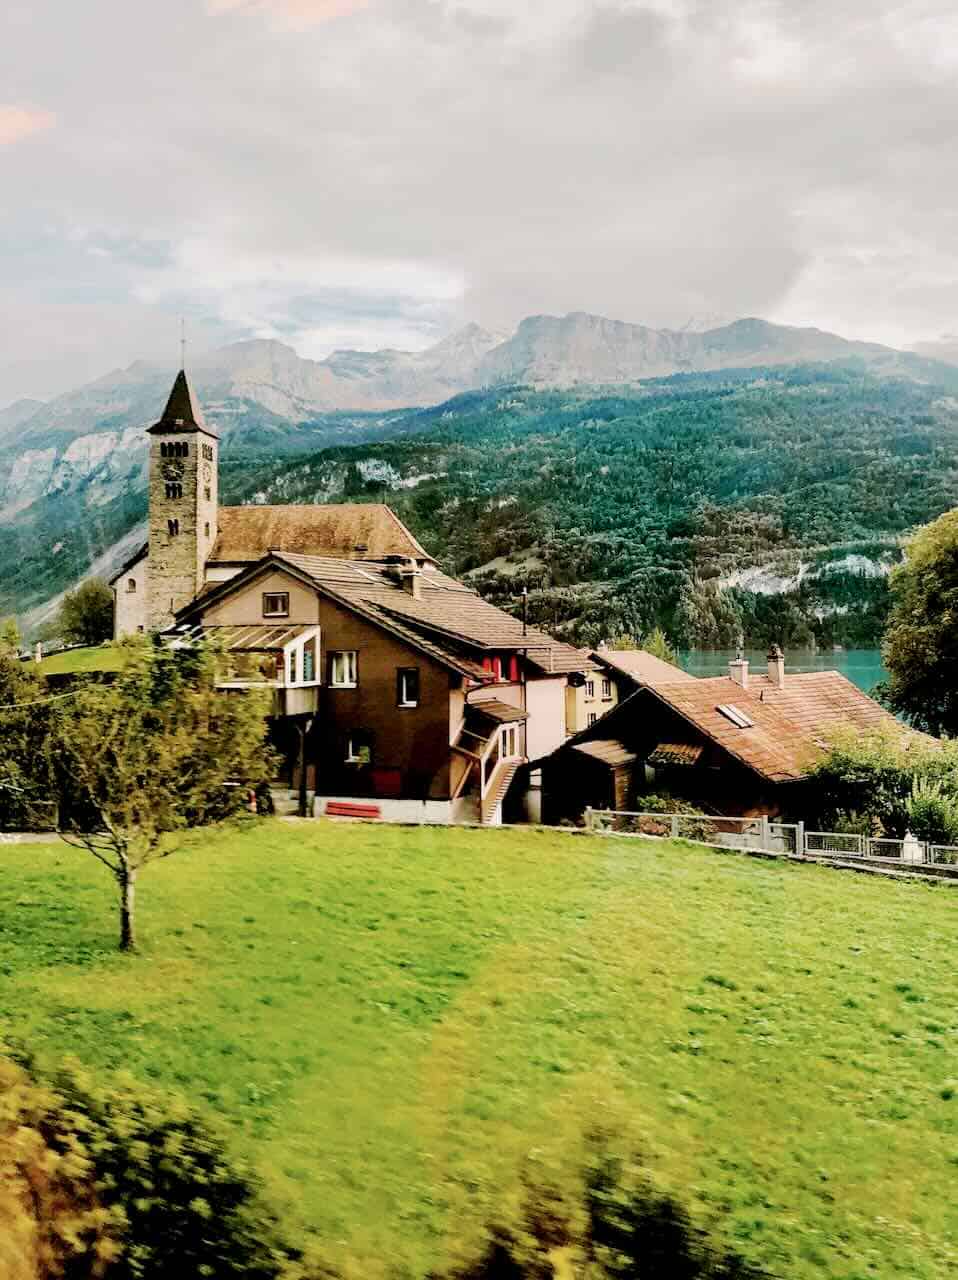 Lauterbrunnen Valley Switzerland - Day trip from Lucerne